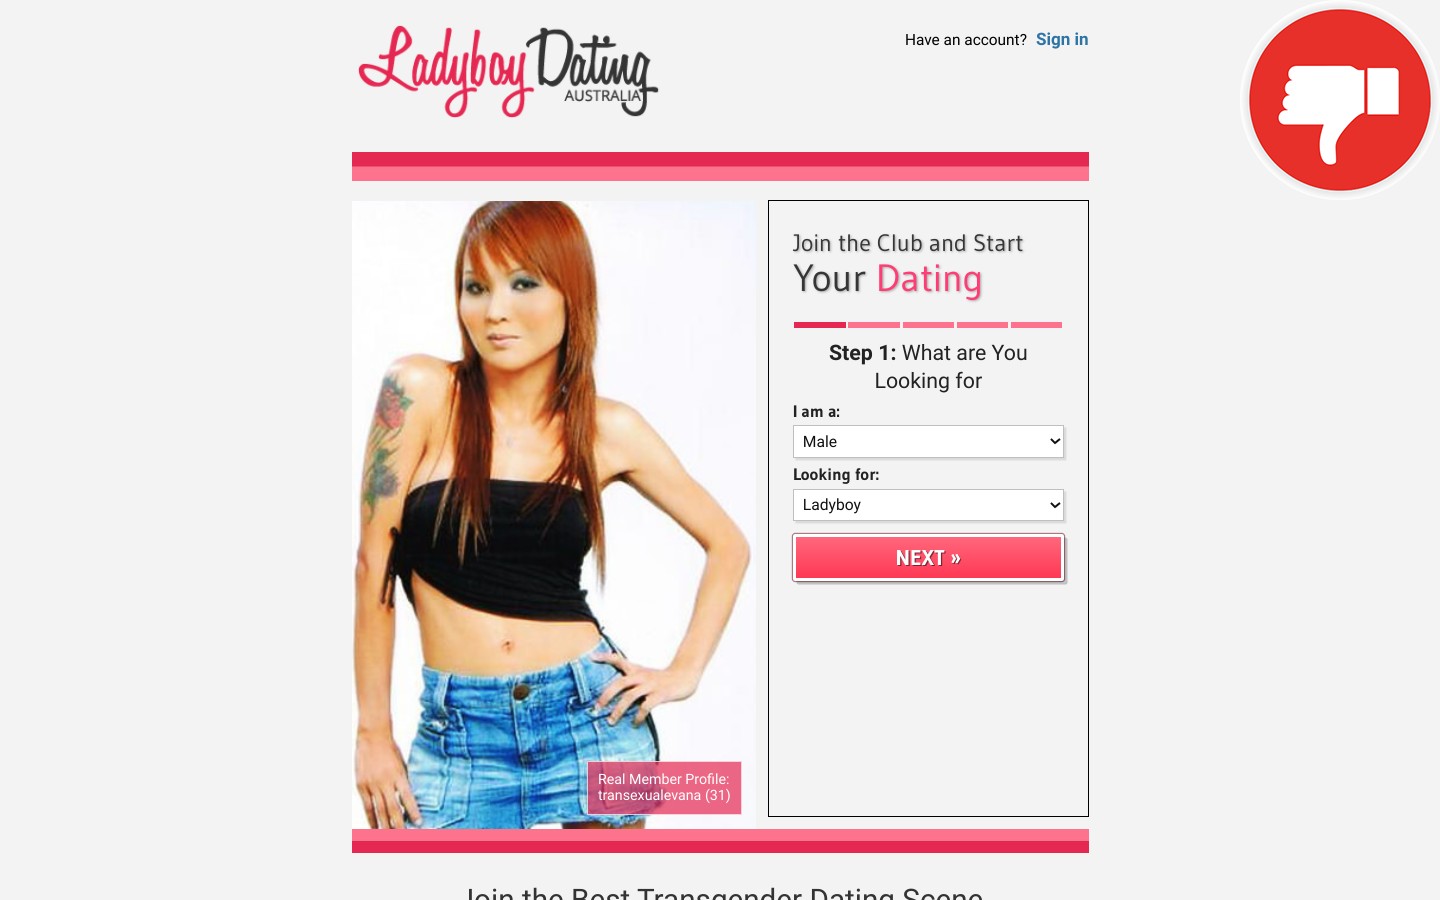 Review LadyboyDating.com.au scam